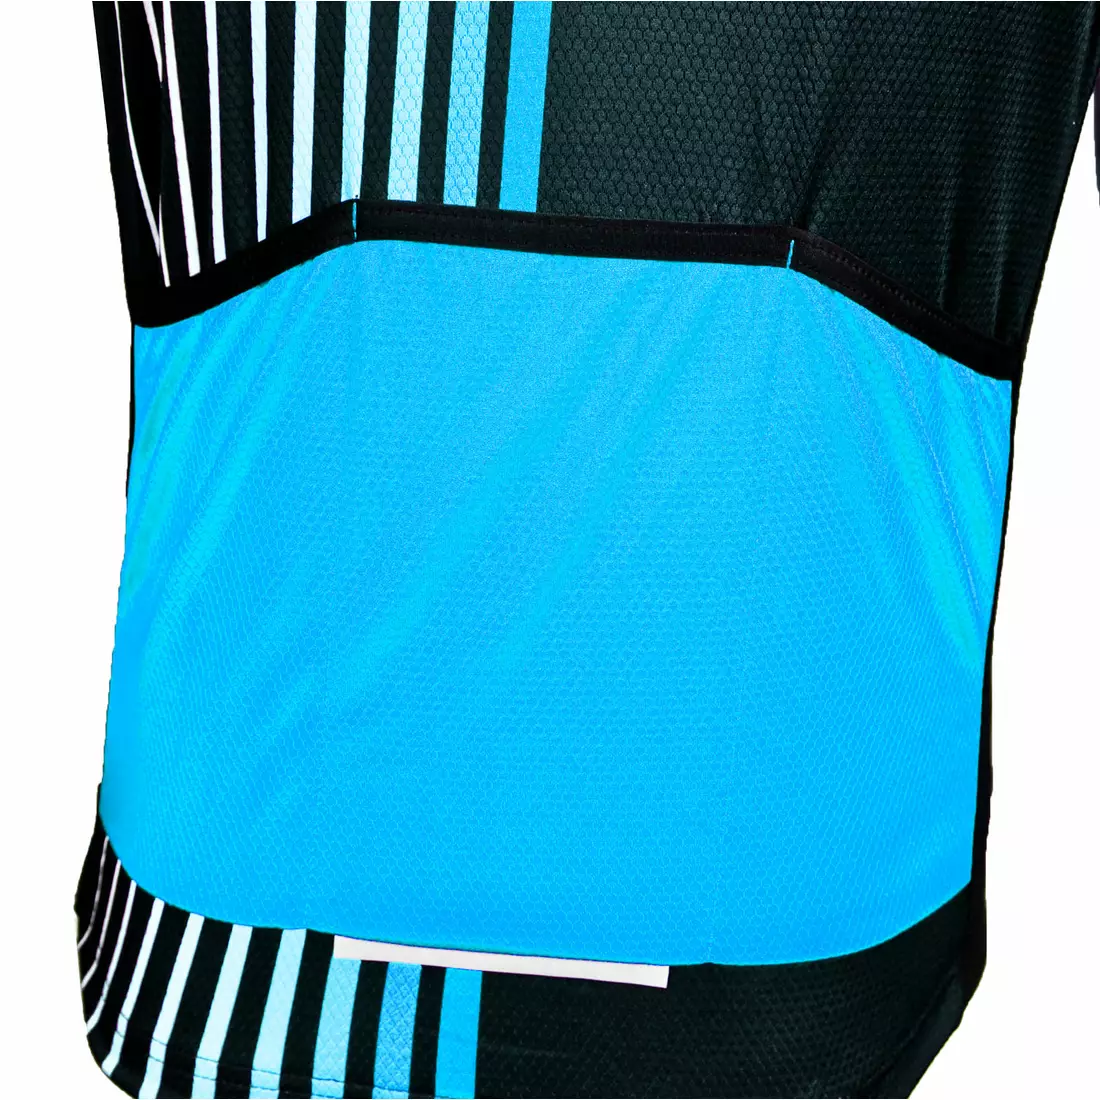 Pánský cyklistický dres DEKO STYLE černo-modrý